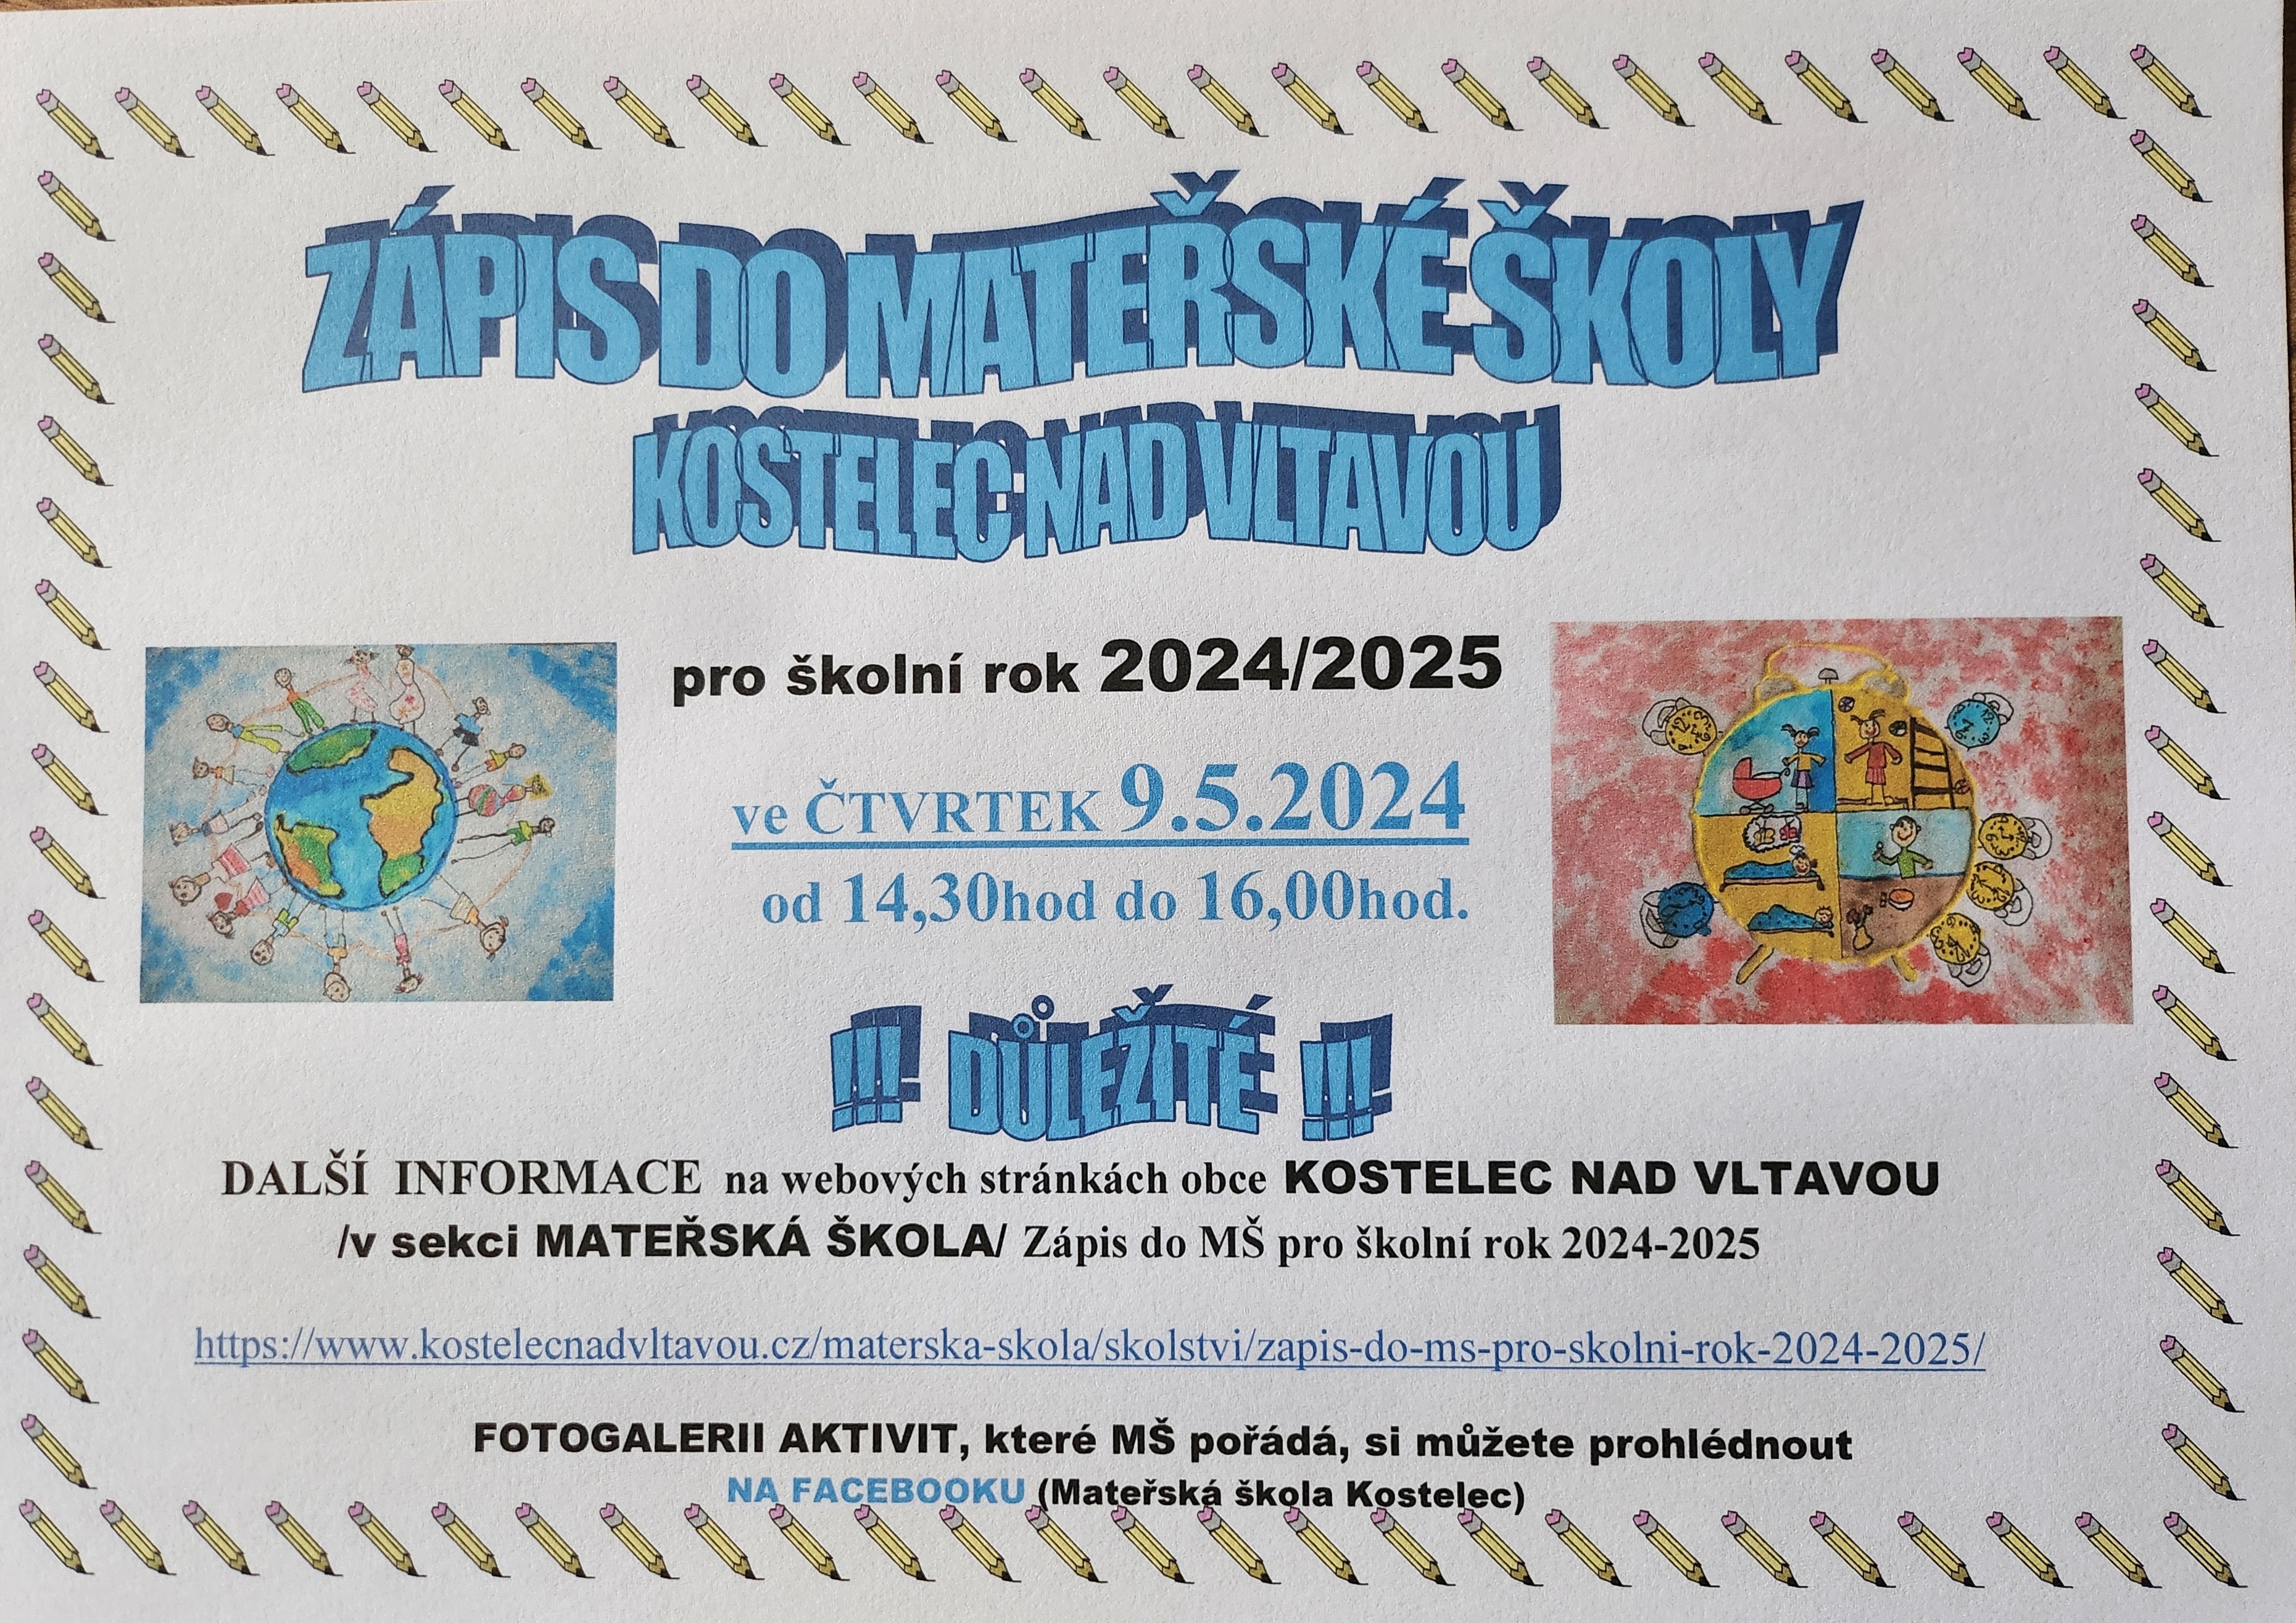 Zápis do mateřské školy Kostelec nad Vltavou pro školní rok 2024/2025 